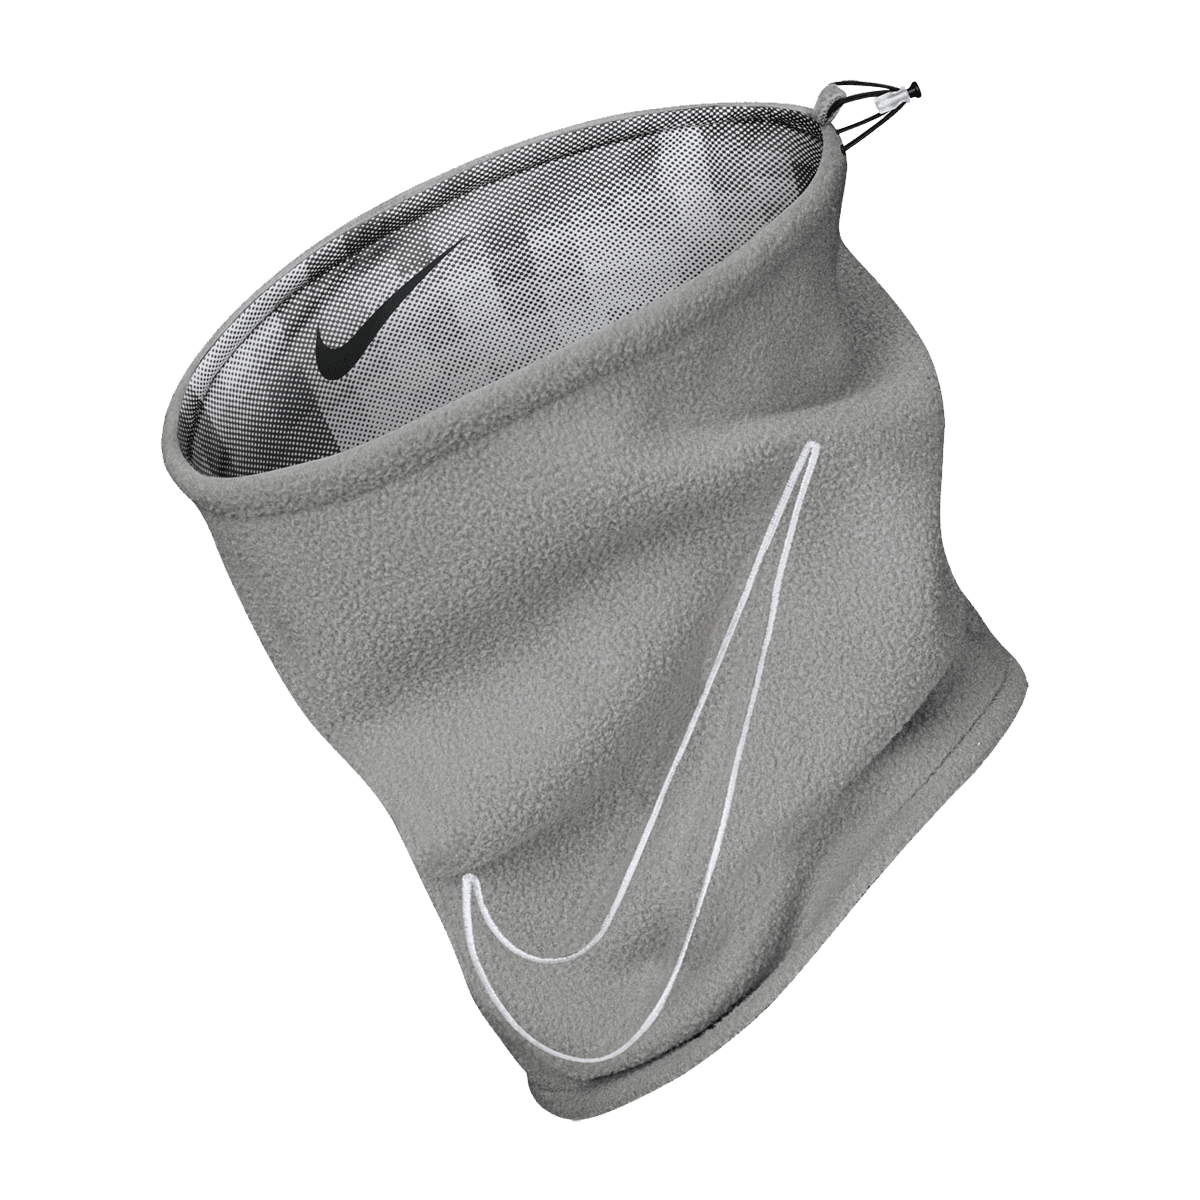 Bragas de cuello Nike Reversible Neck Warmer 2.0